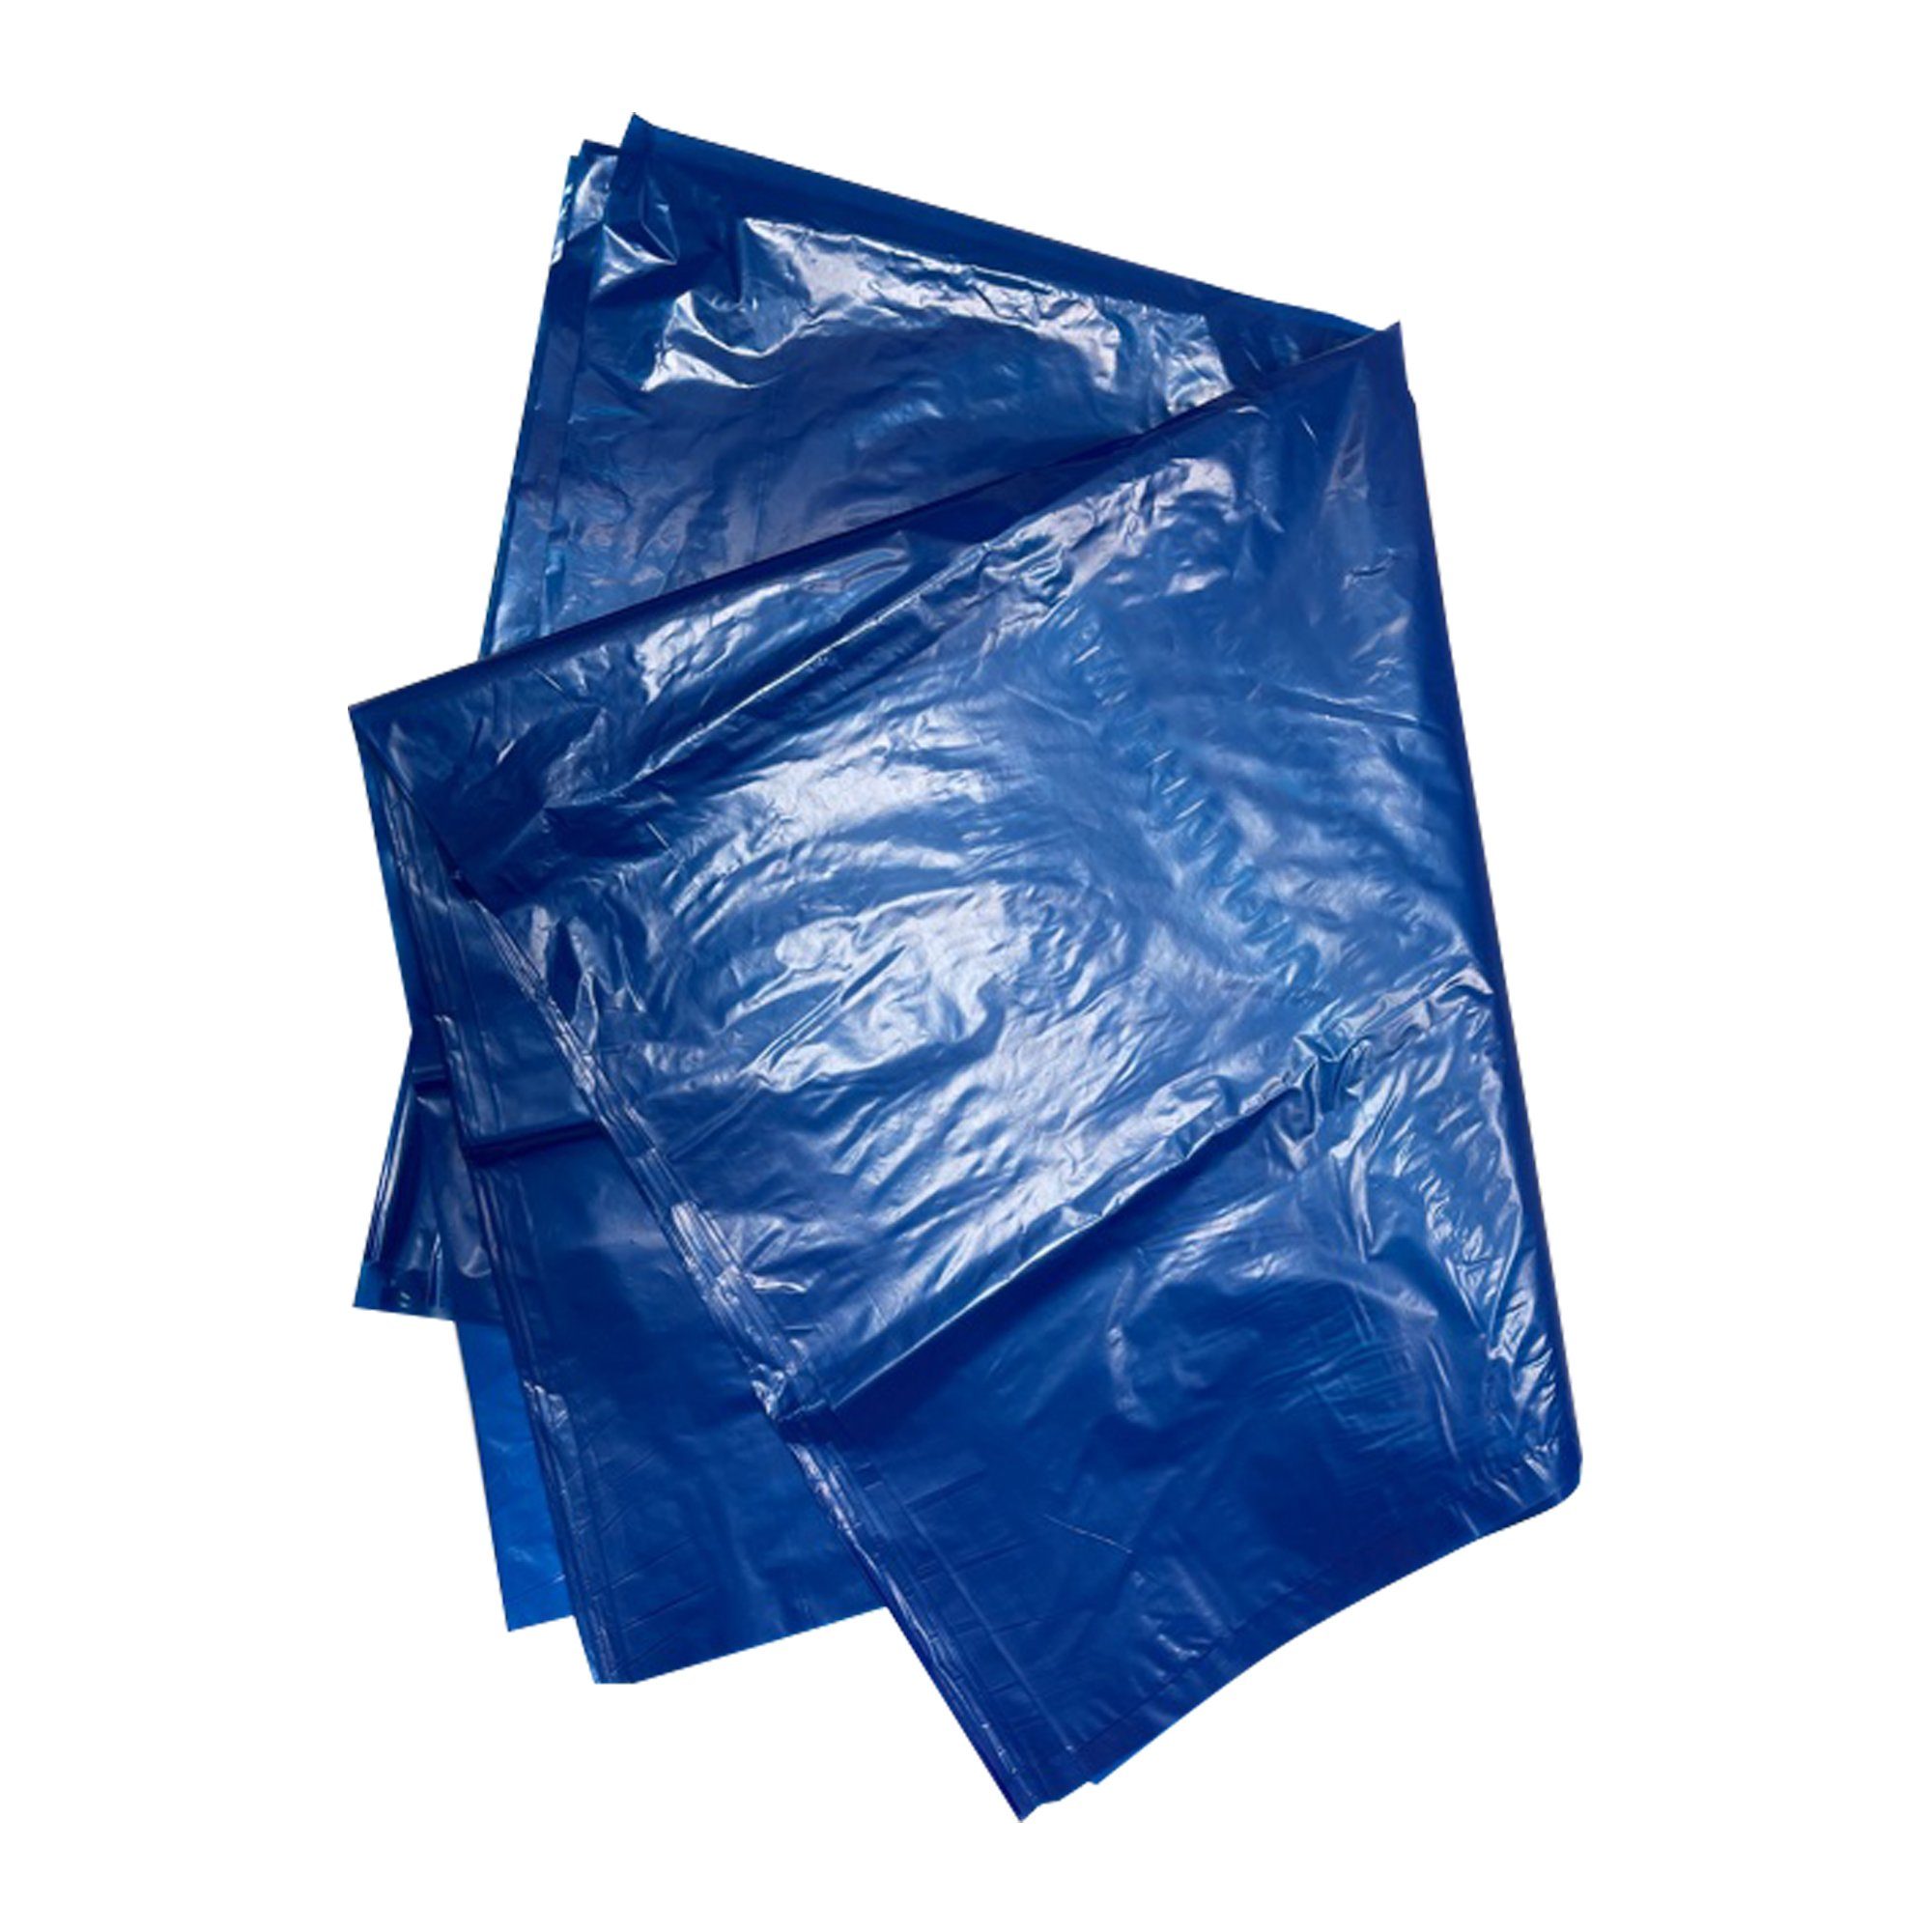 St Mülleimer VaGo-Tools blau Müllbeutel Abfallsäcke 15 240L extra stark